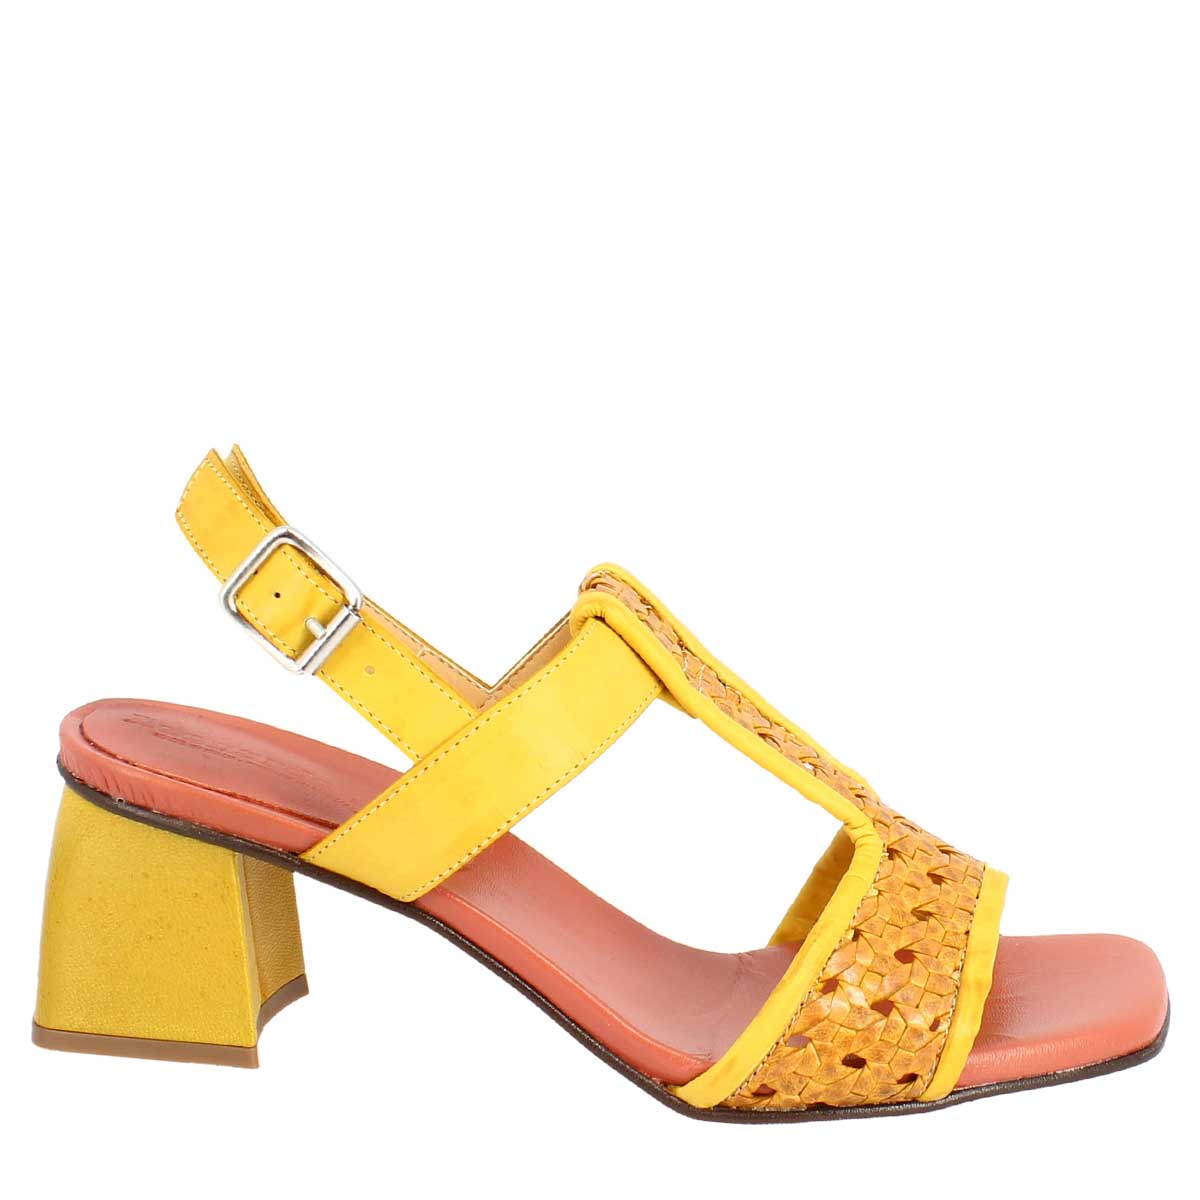 Sandali artigianali da donna slingback in pelle intrecciata color giallo.